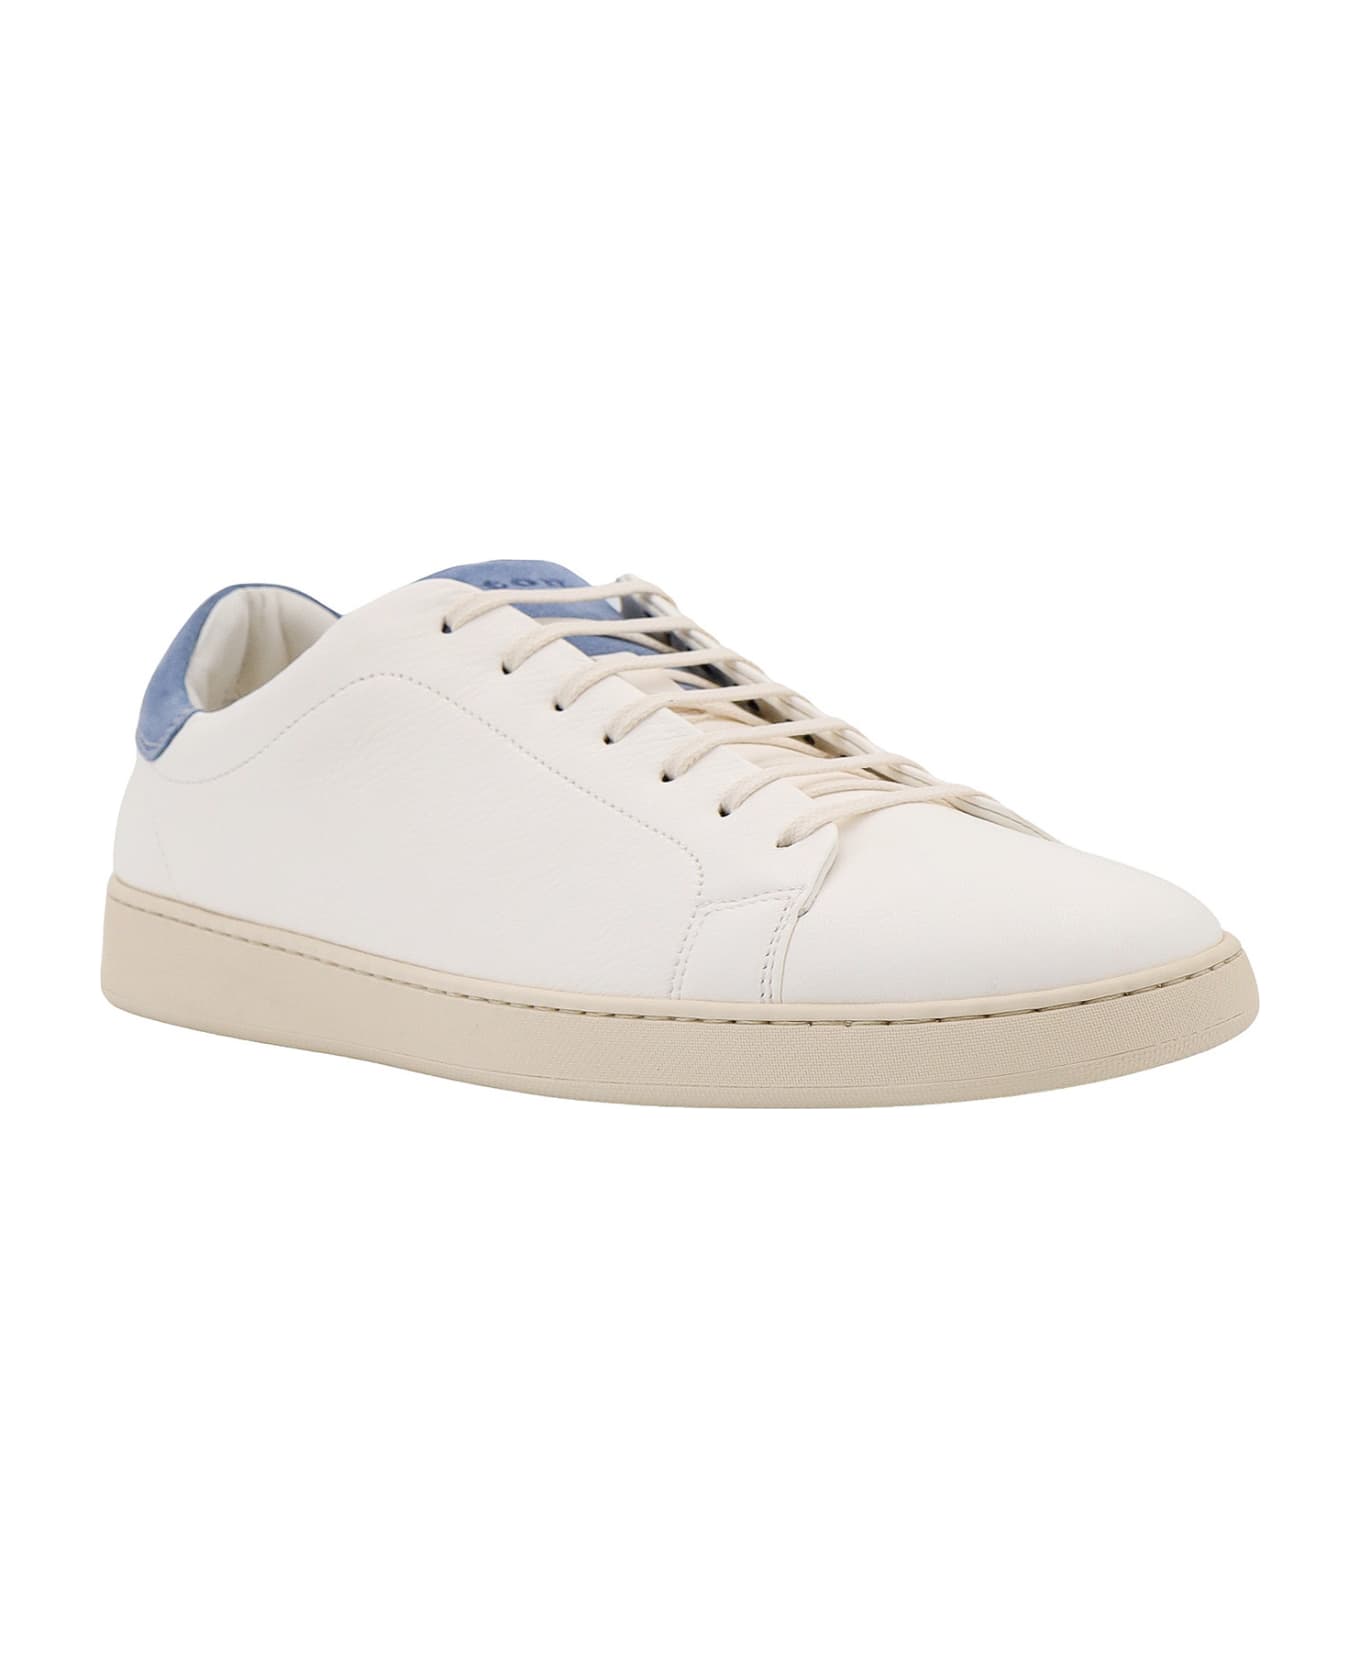 Kiton Ten2 Sneakers - White